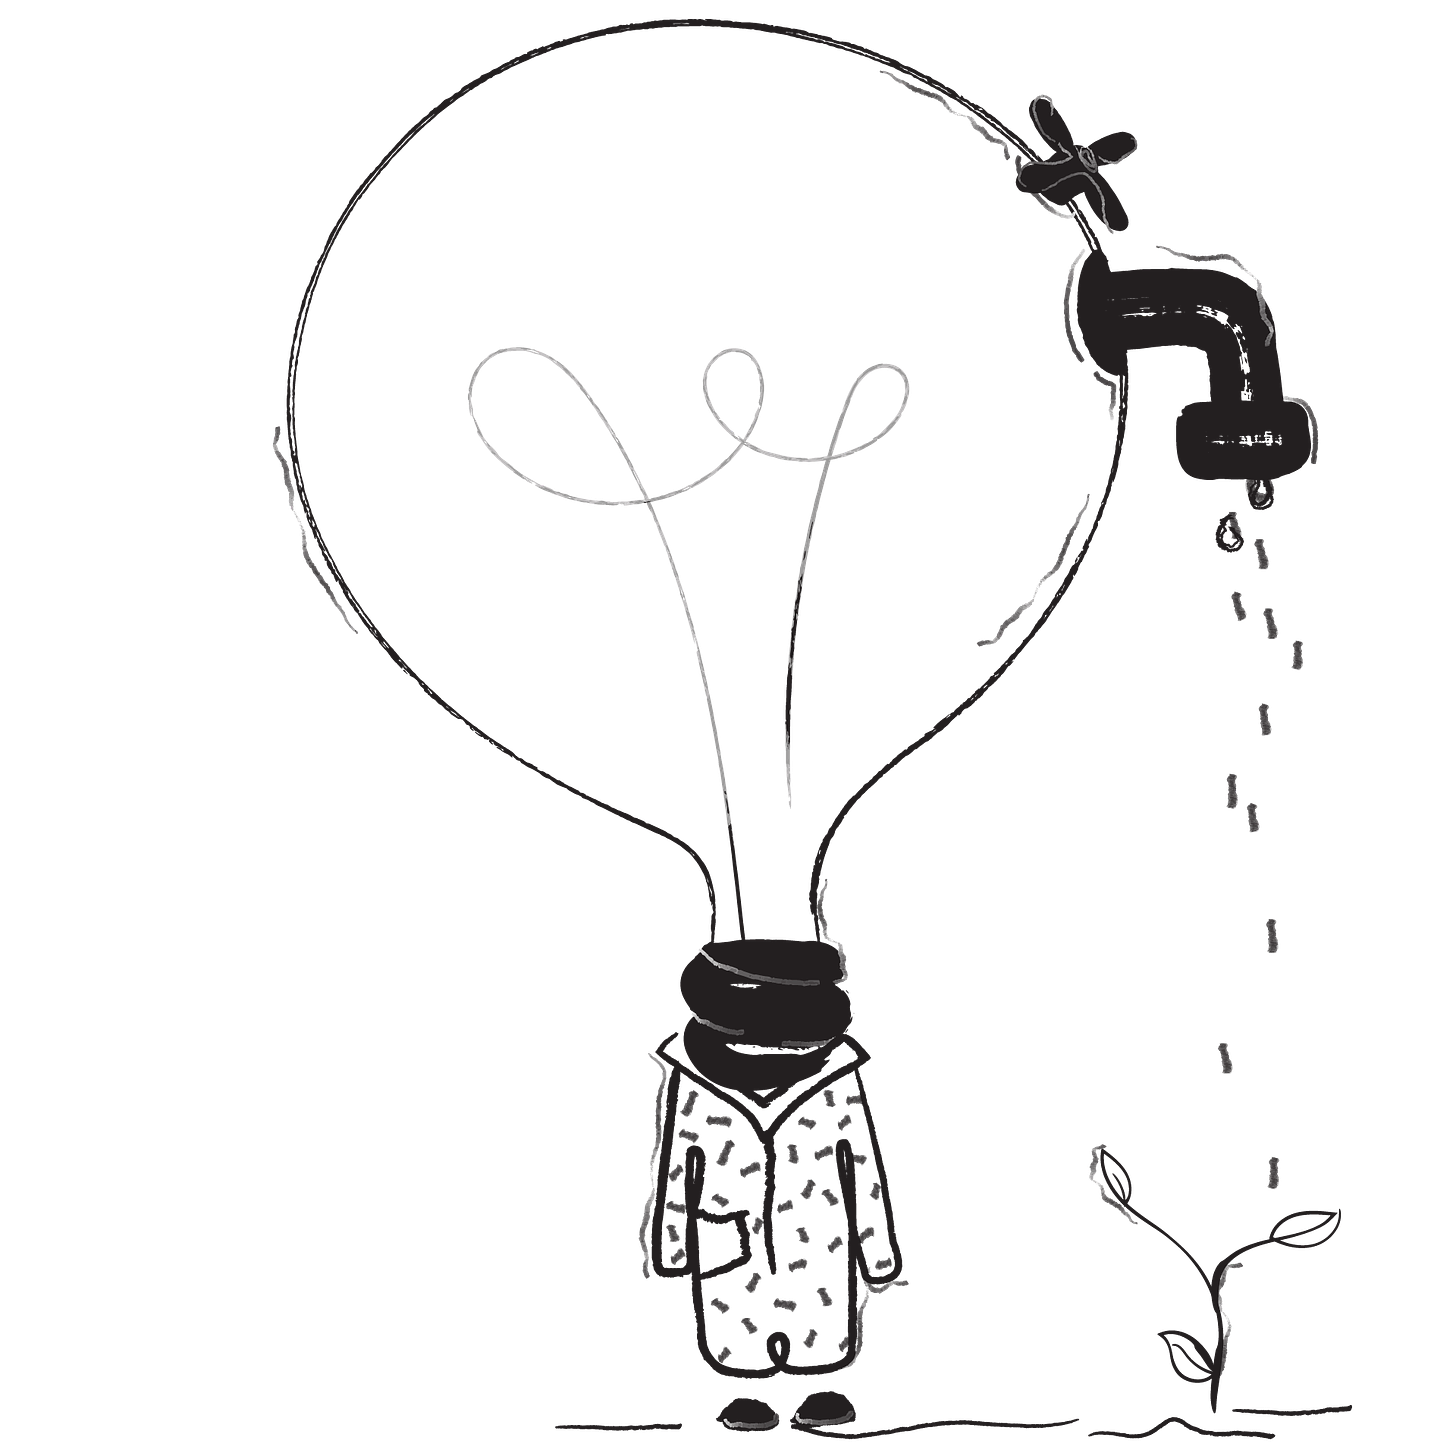 absurd design - Ampoule illustration pour une idée de pretotype